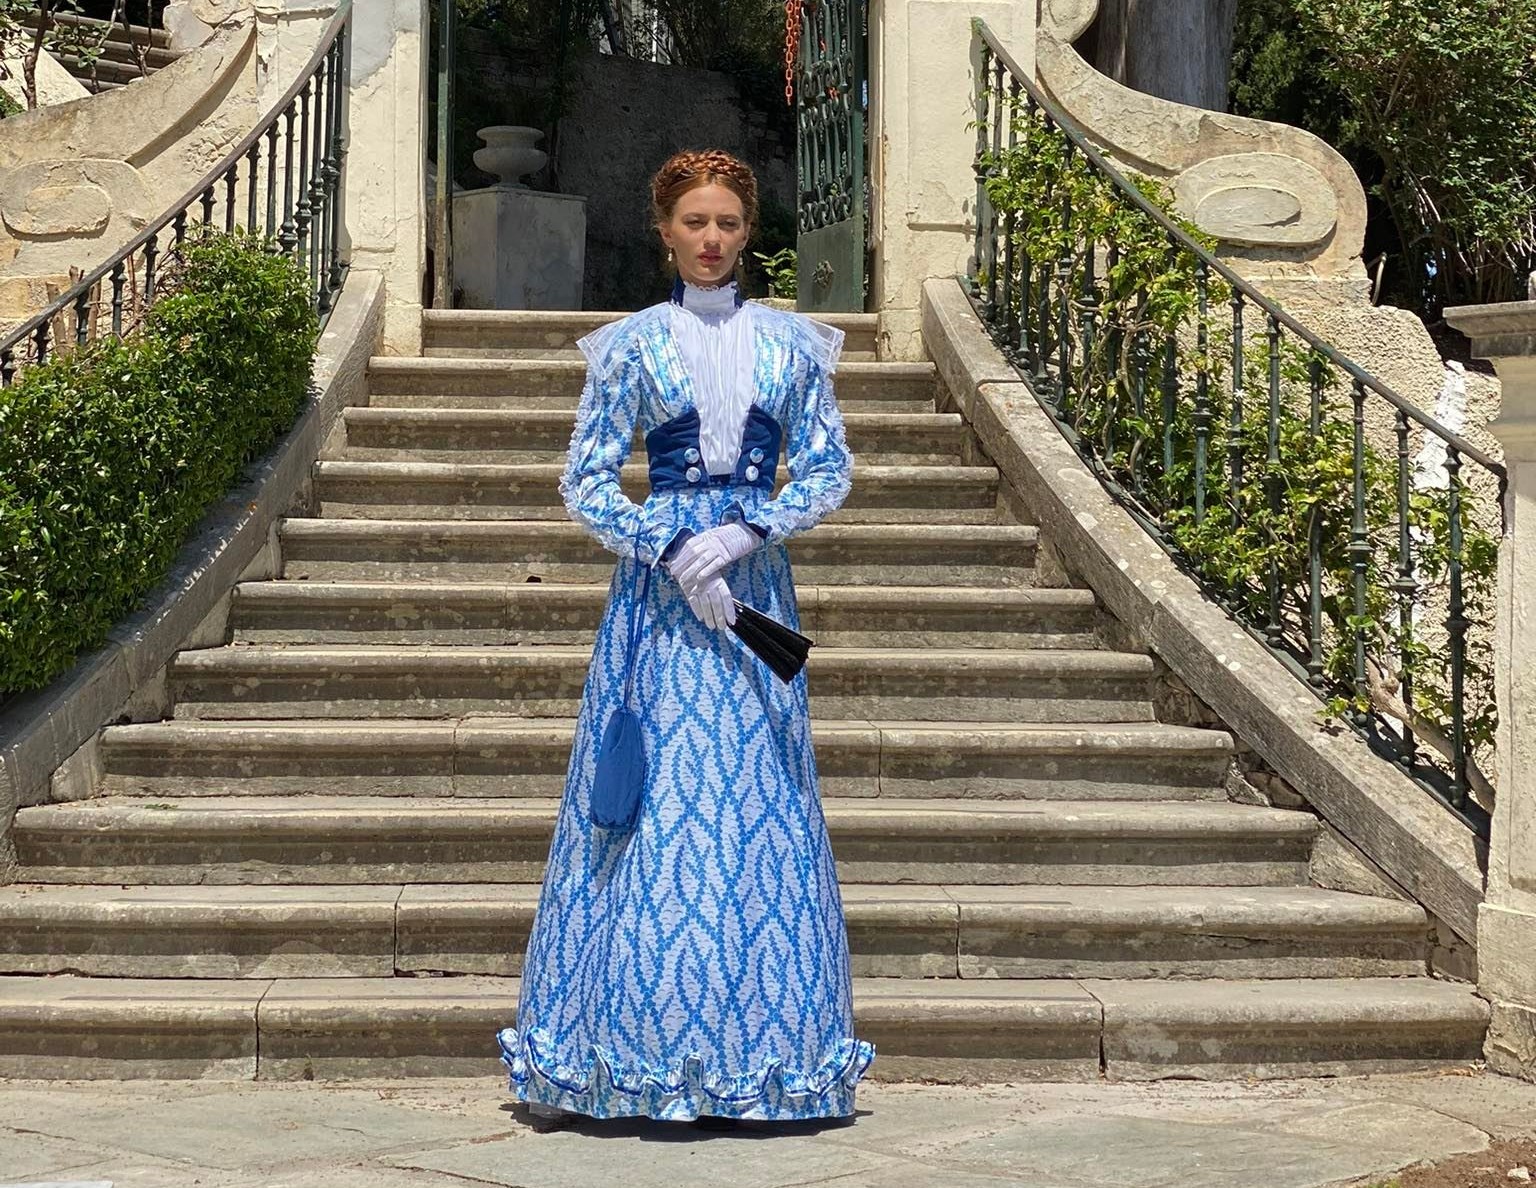 Κέρκυρα: Πιστά αντίγραφα των αγαπημένων φορεμάτων της πριγκίπισσας Σίσσυ στους κήπους του Αχιλλείου